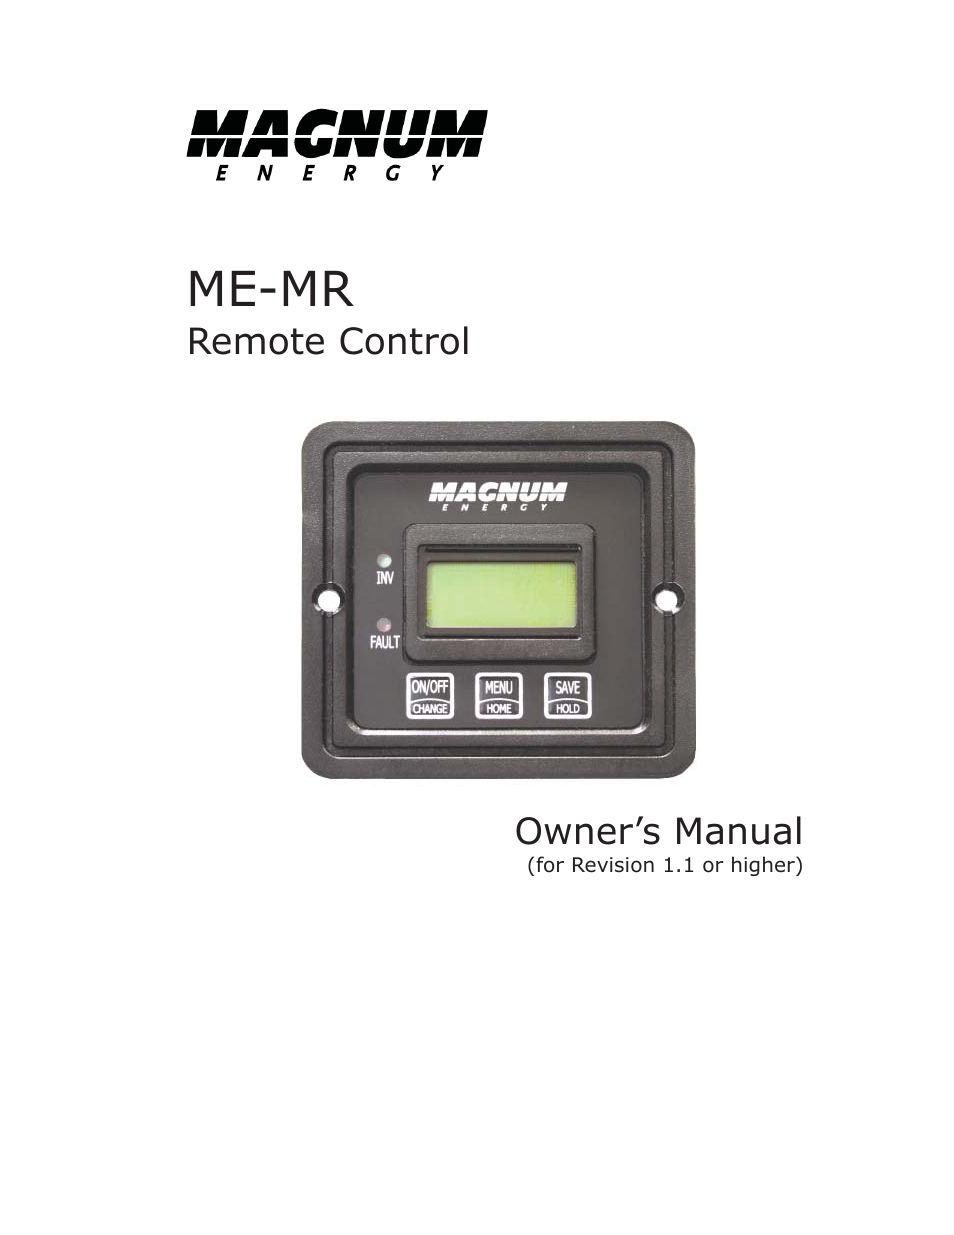 ME-MR Remote